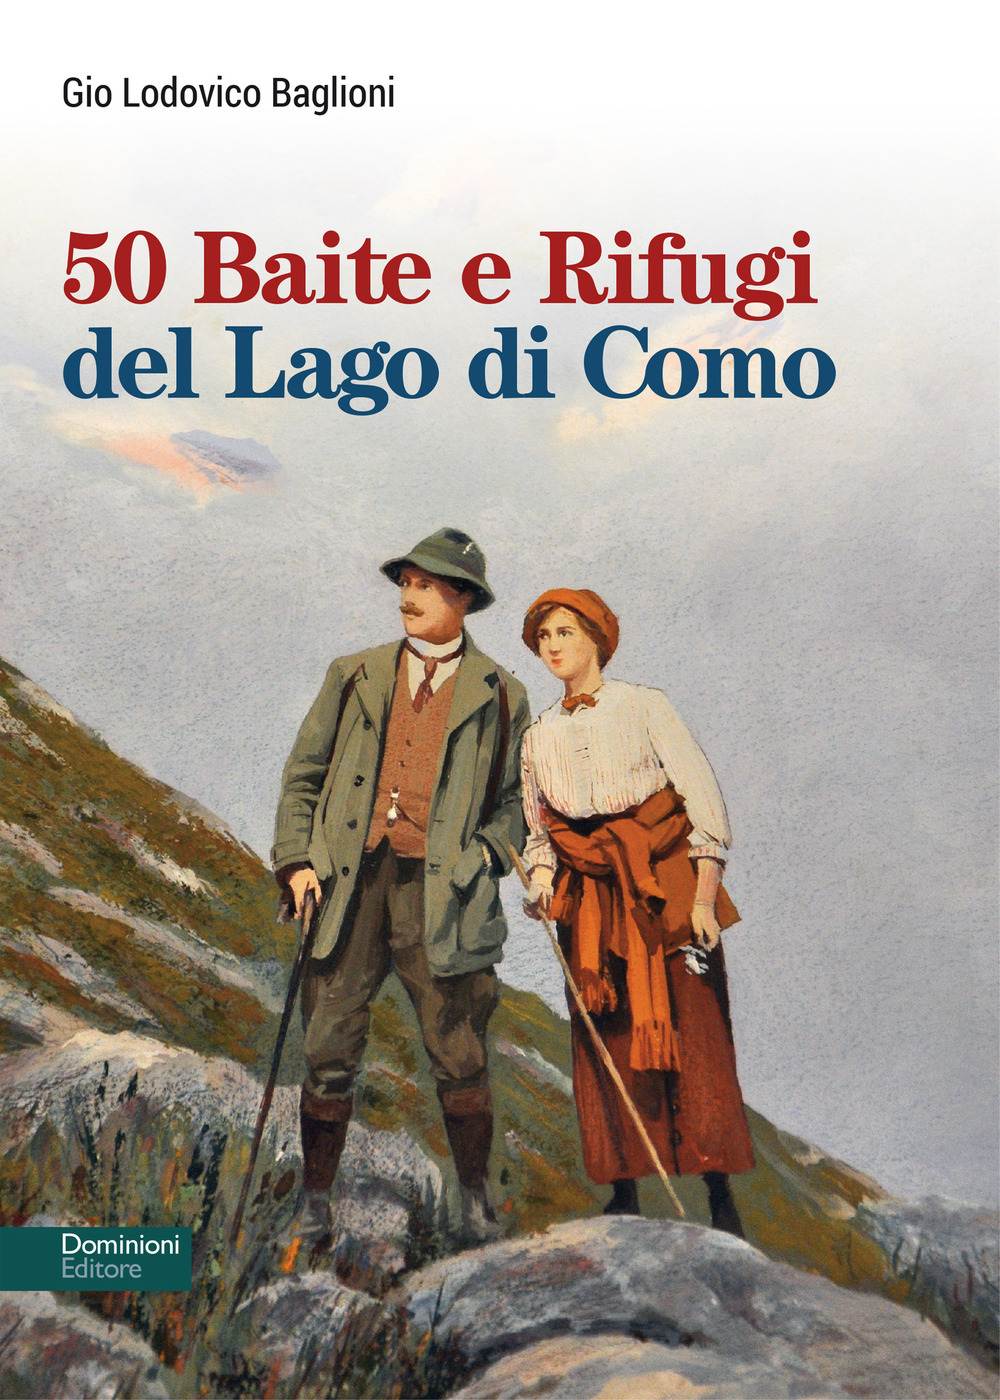 Libri Baglioni Gio Lodovico - 50 Baite E Rifugi Del Lago Di Como NUOVO SIGILLATO, EDIZIONE DEL 31/05/2021 SUBITO DISPONIBILE